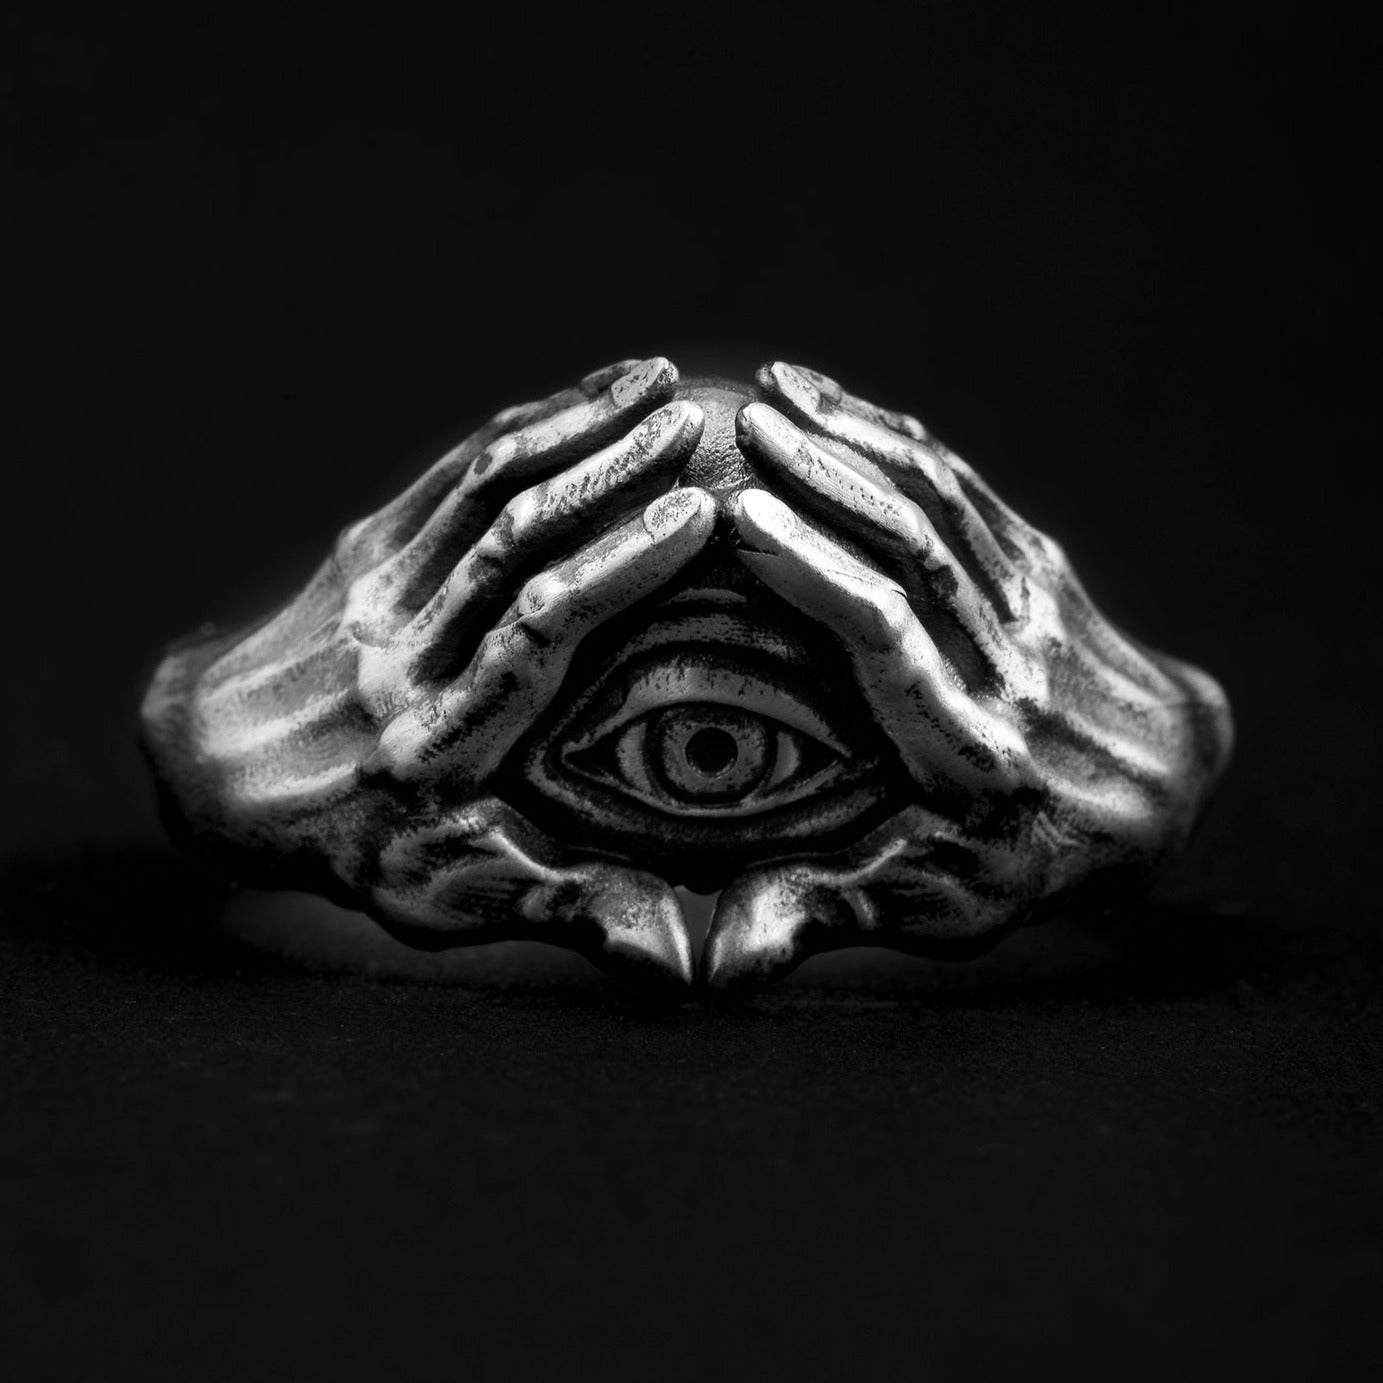 handmade sterling silver Illuminati Eyes Ring